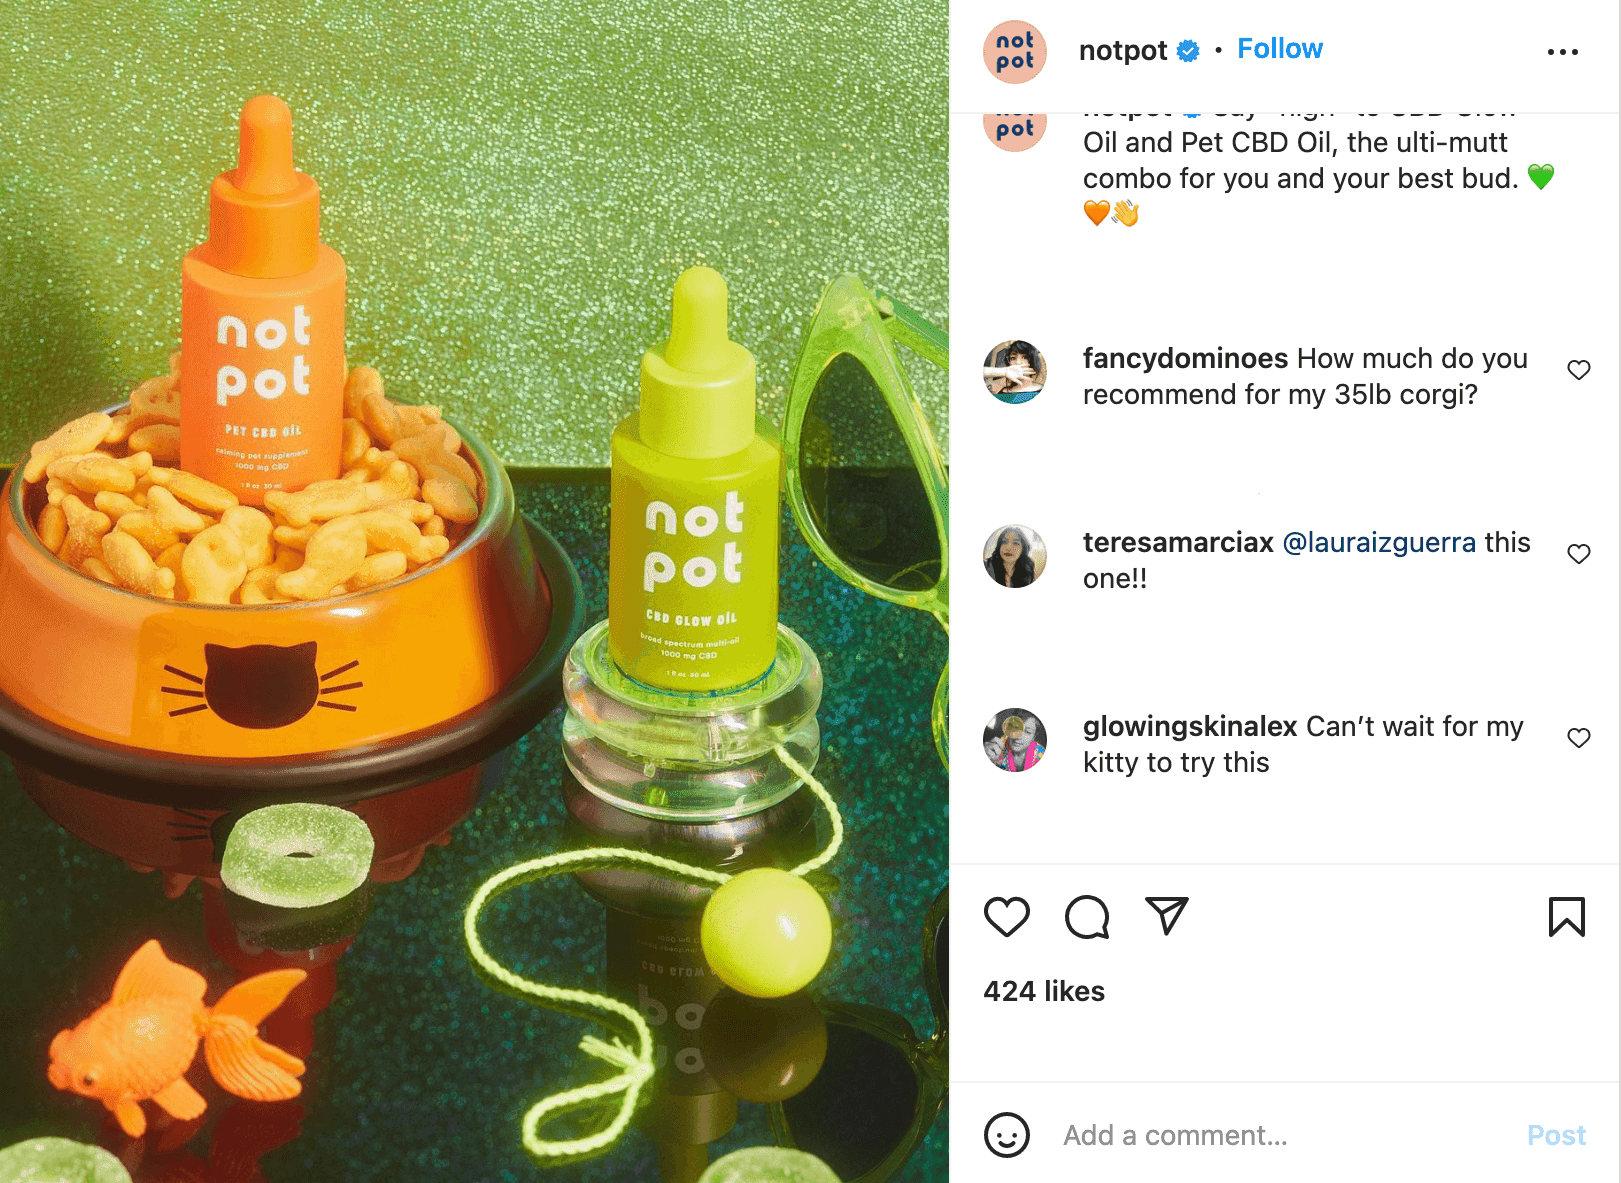 Not Pot instagram post about their pet CBD